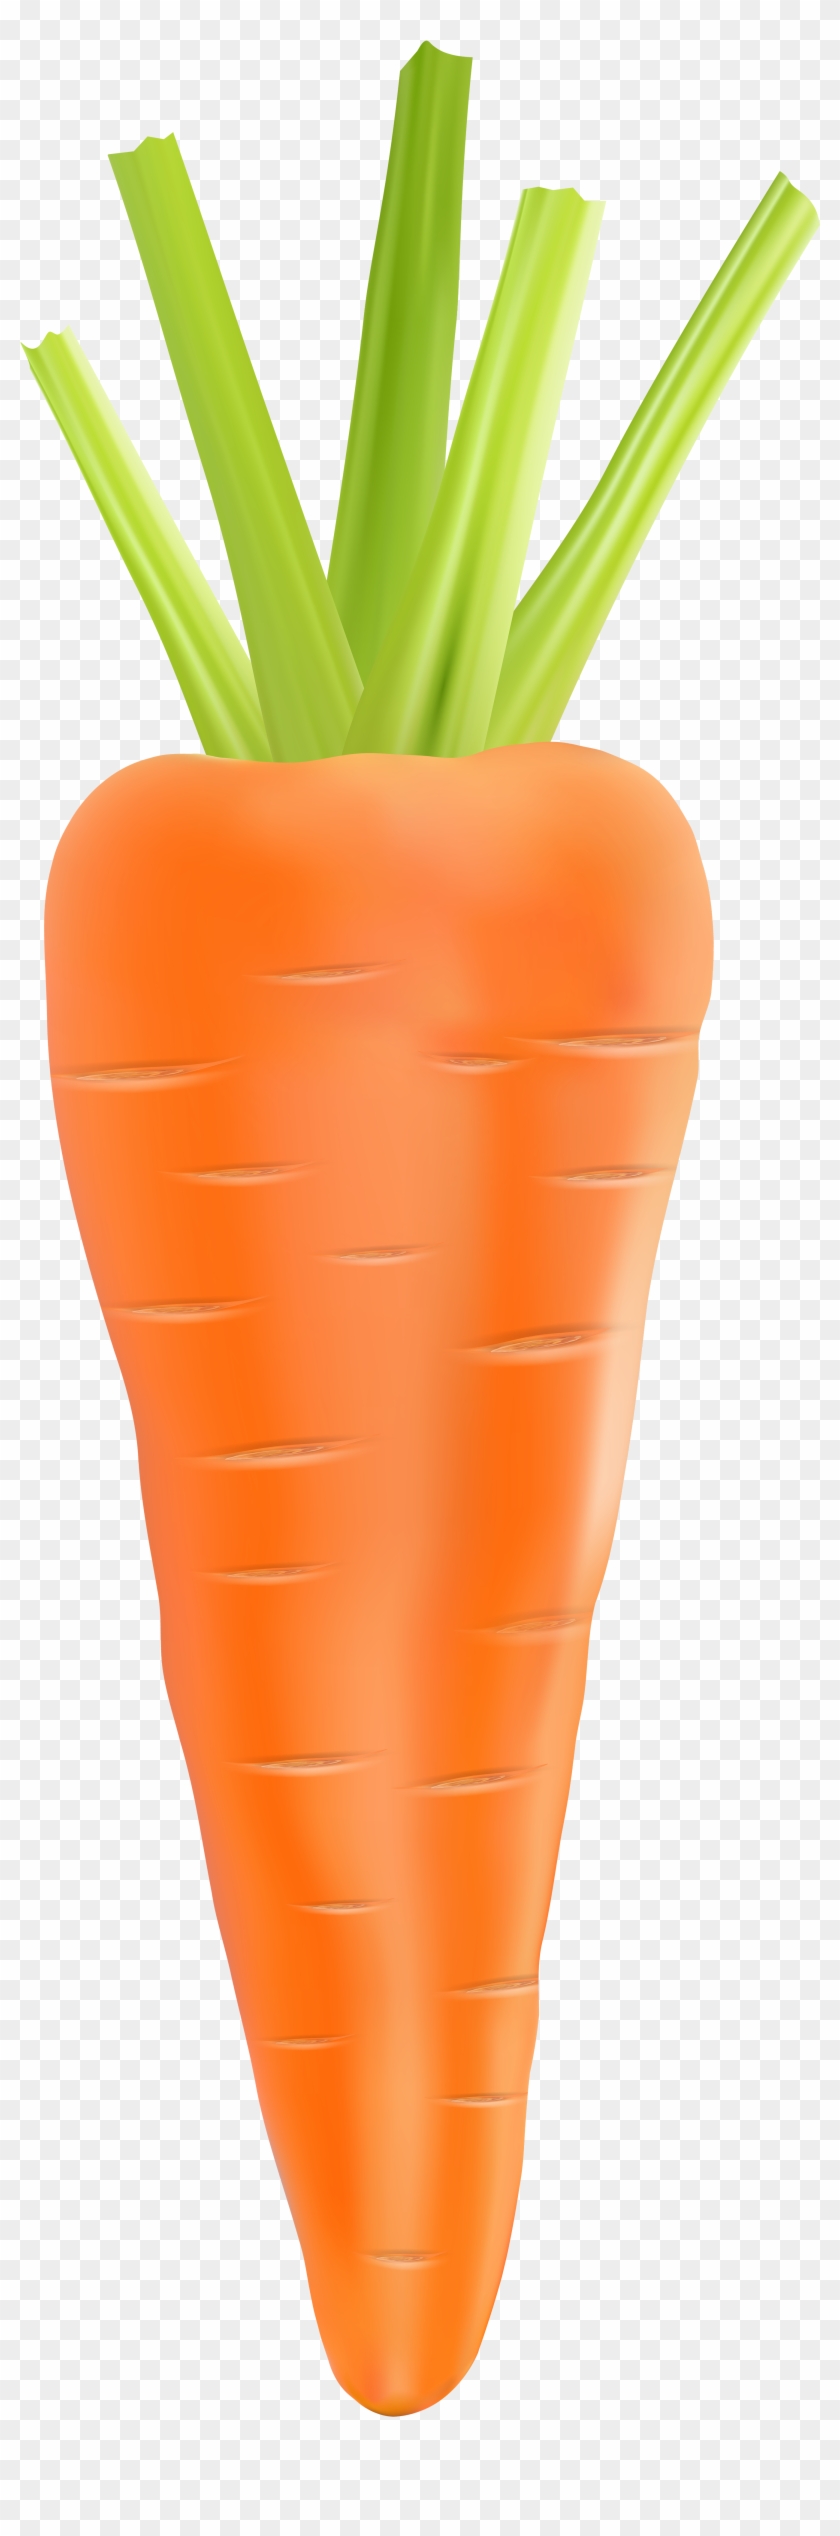 Carrot Clip Art - Carrot #20271